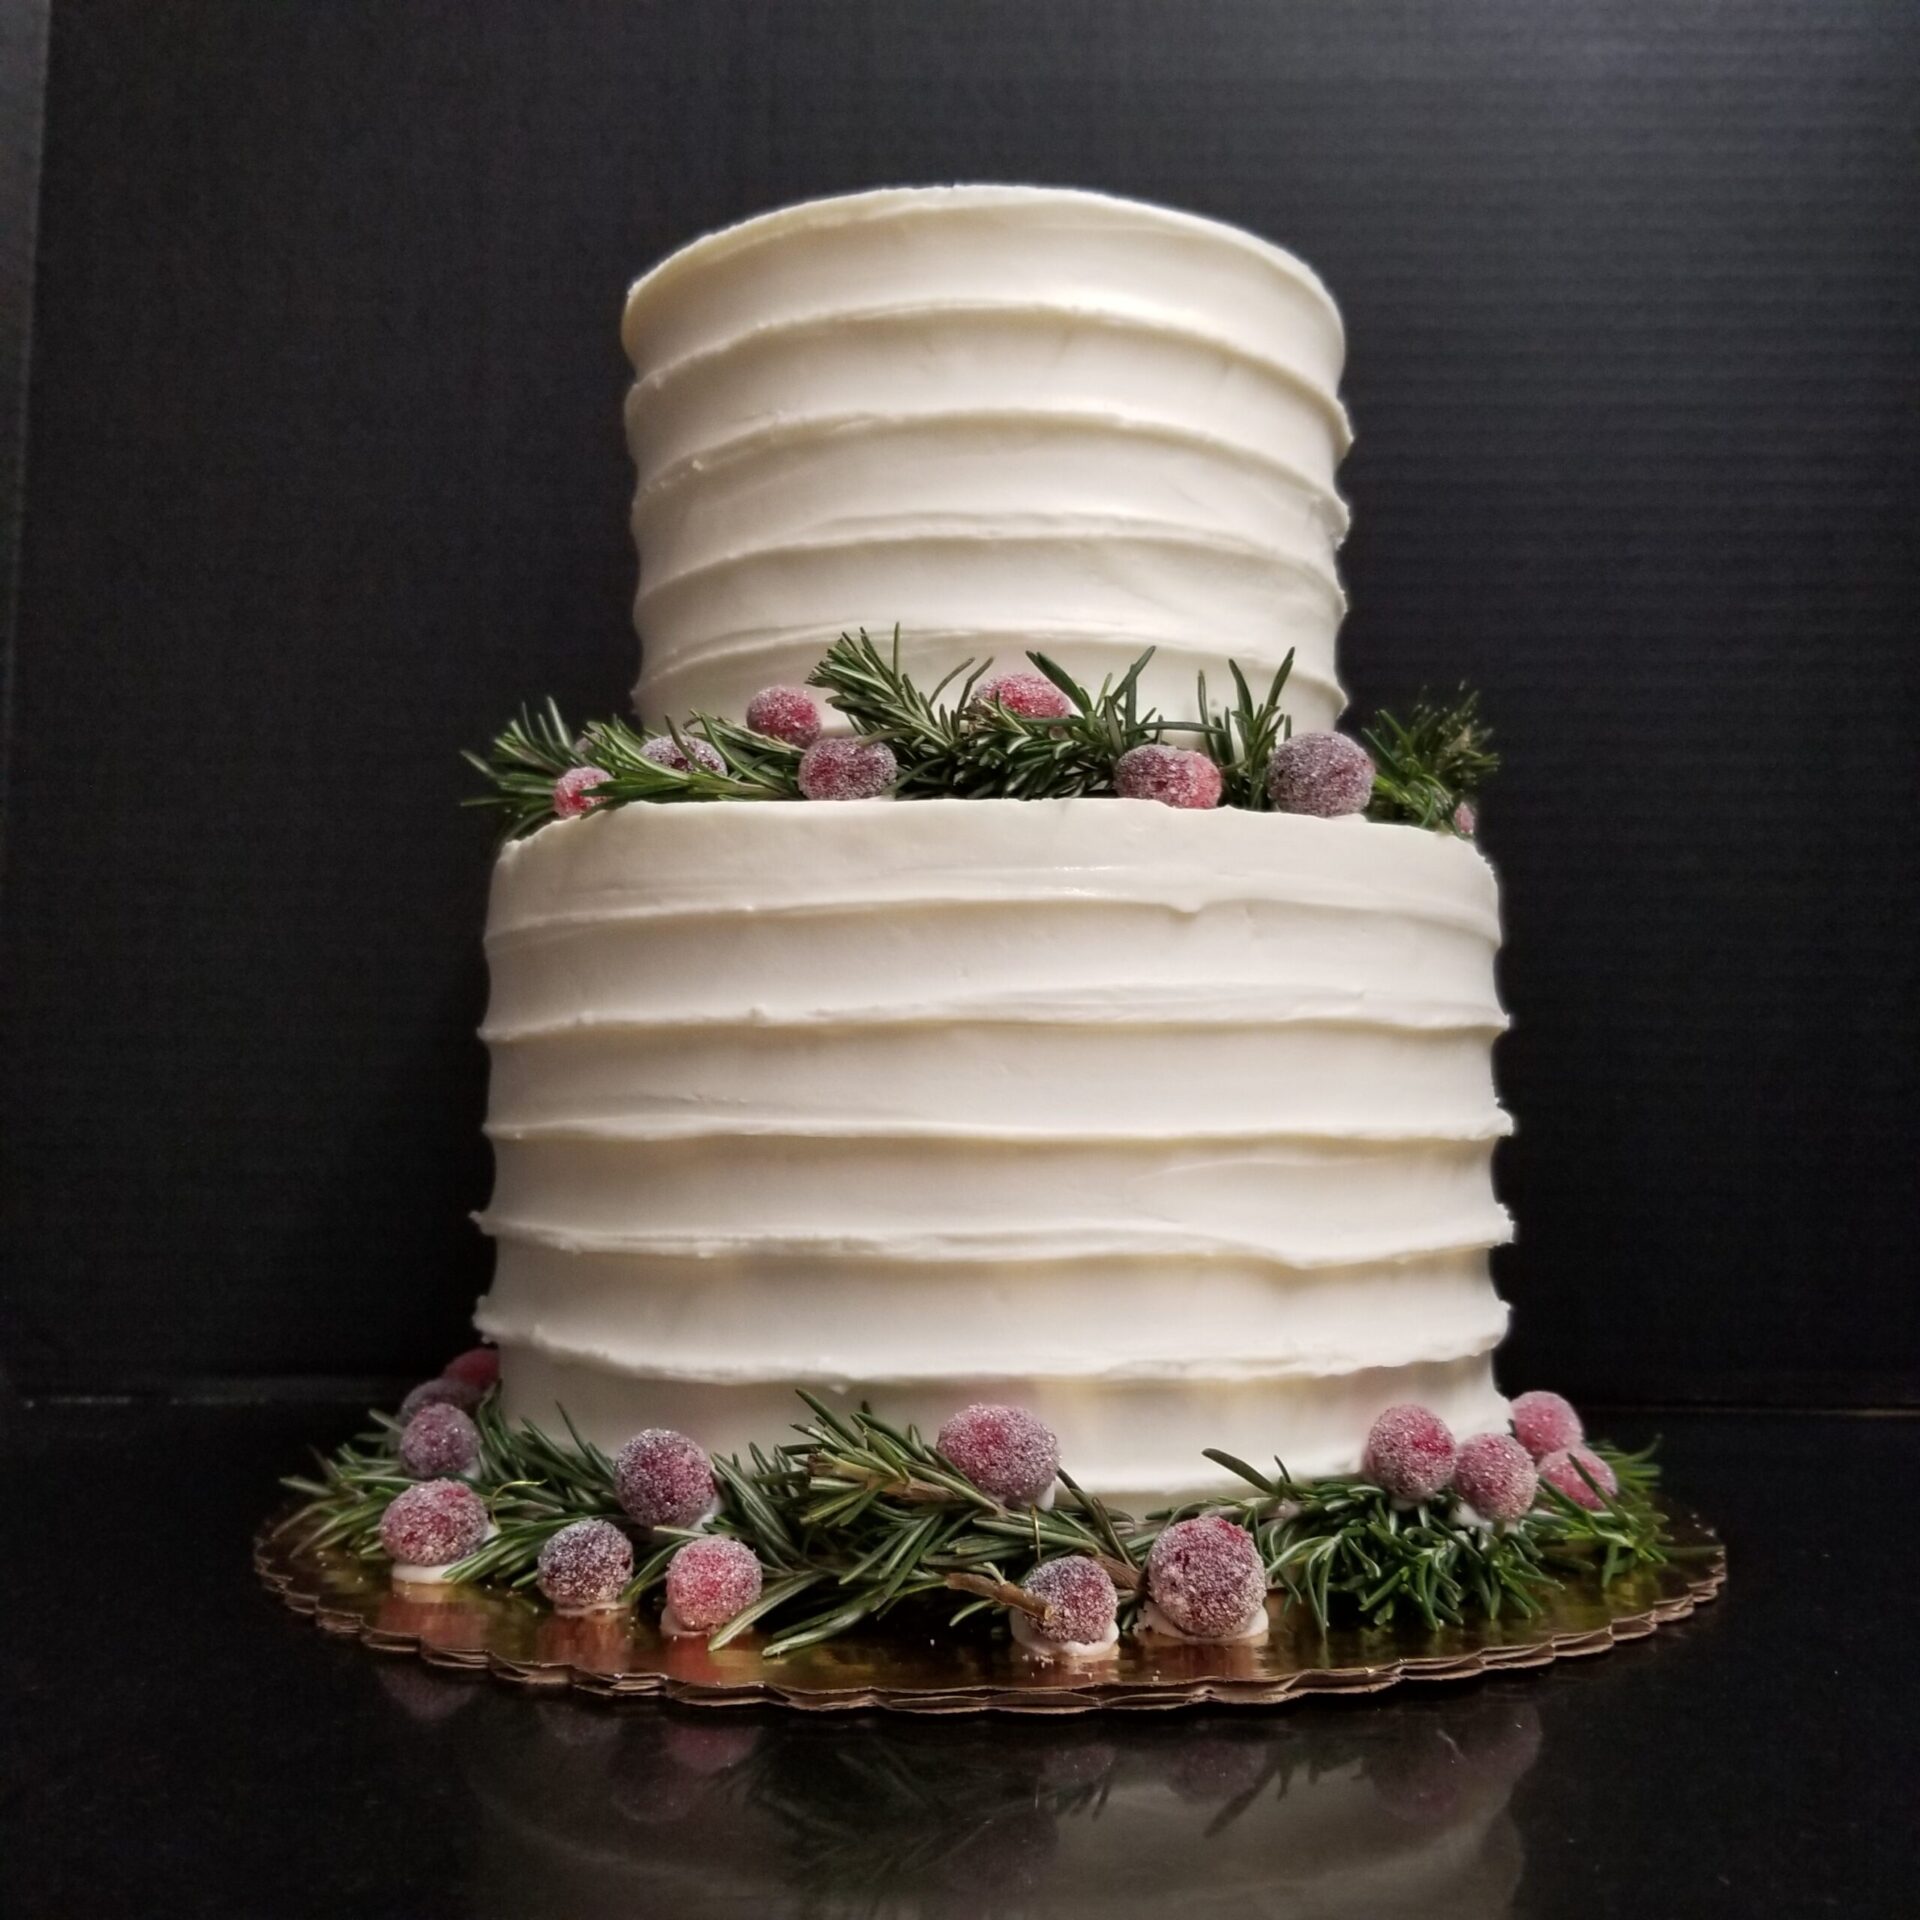 2 Tier Strawberry Shortcake Cake for Birthday & Special Occasions-nextbuild.com.vn